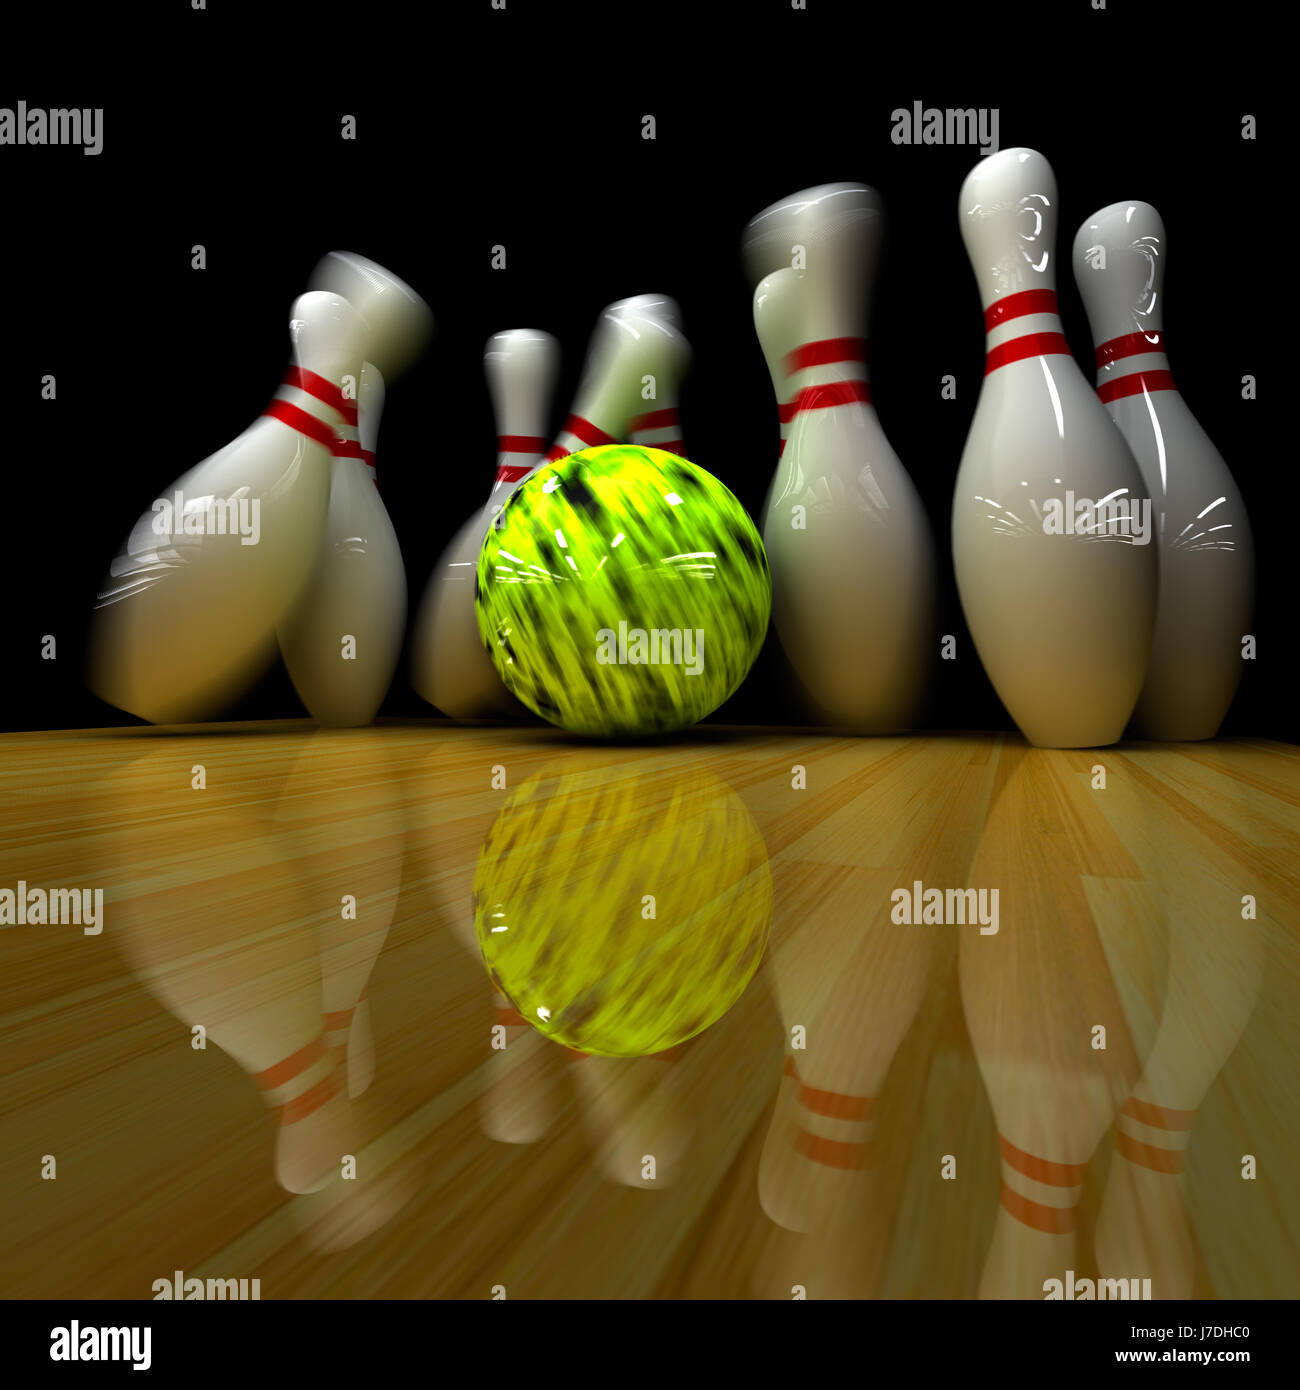 Hit-game-Turnier spielen Stücke spielte Ball Aktion Strike bowling Schale  Stockfotografie - Alamy